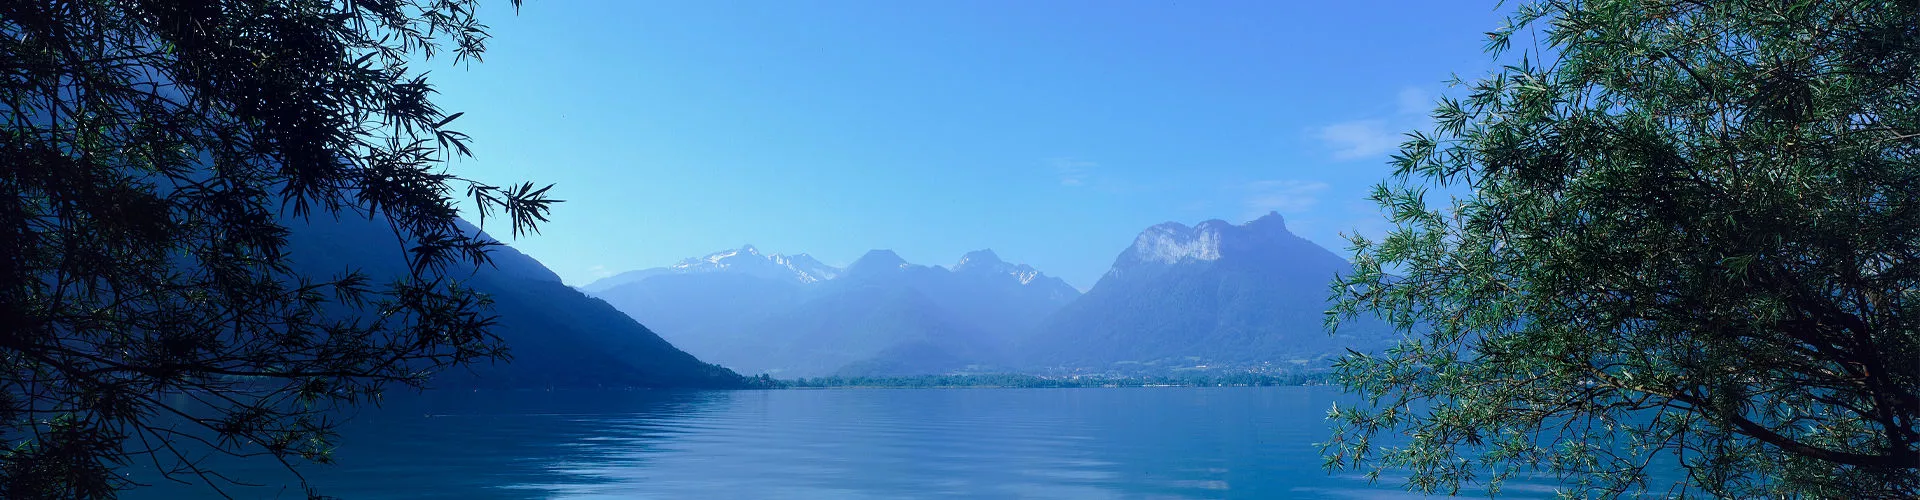 Lac d'Annecy et les montagnes environnantes en fond